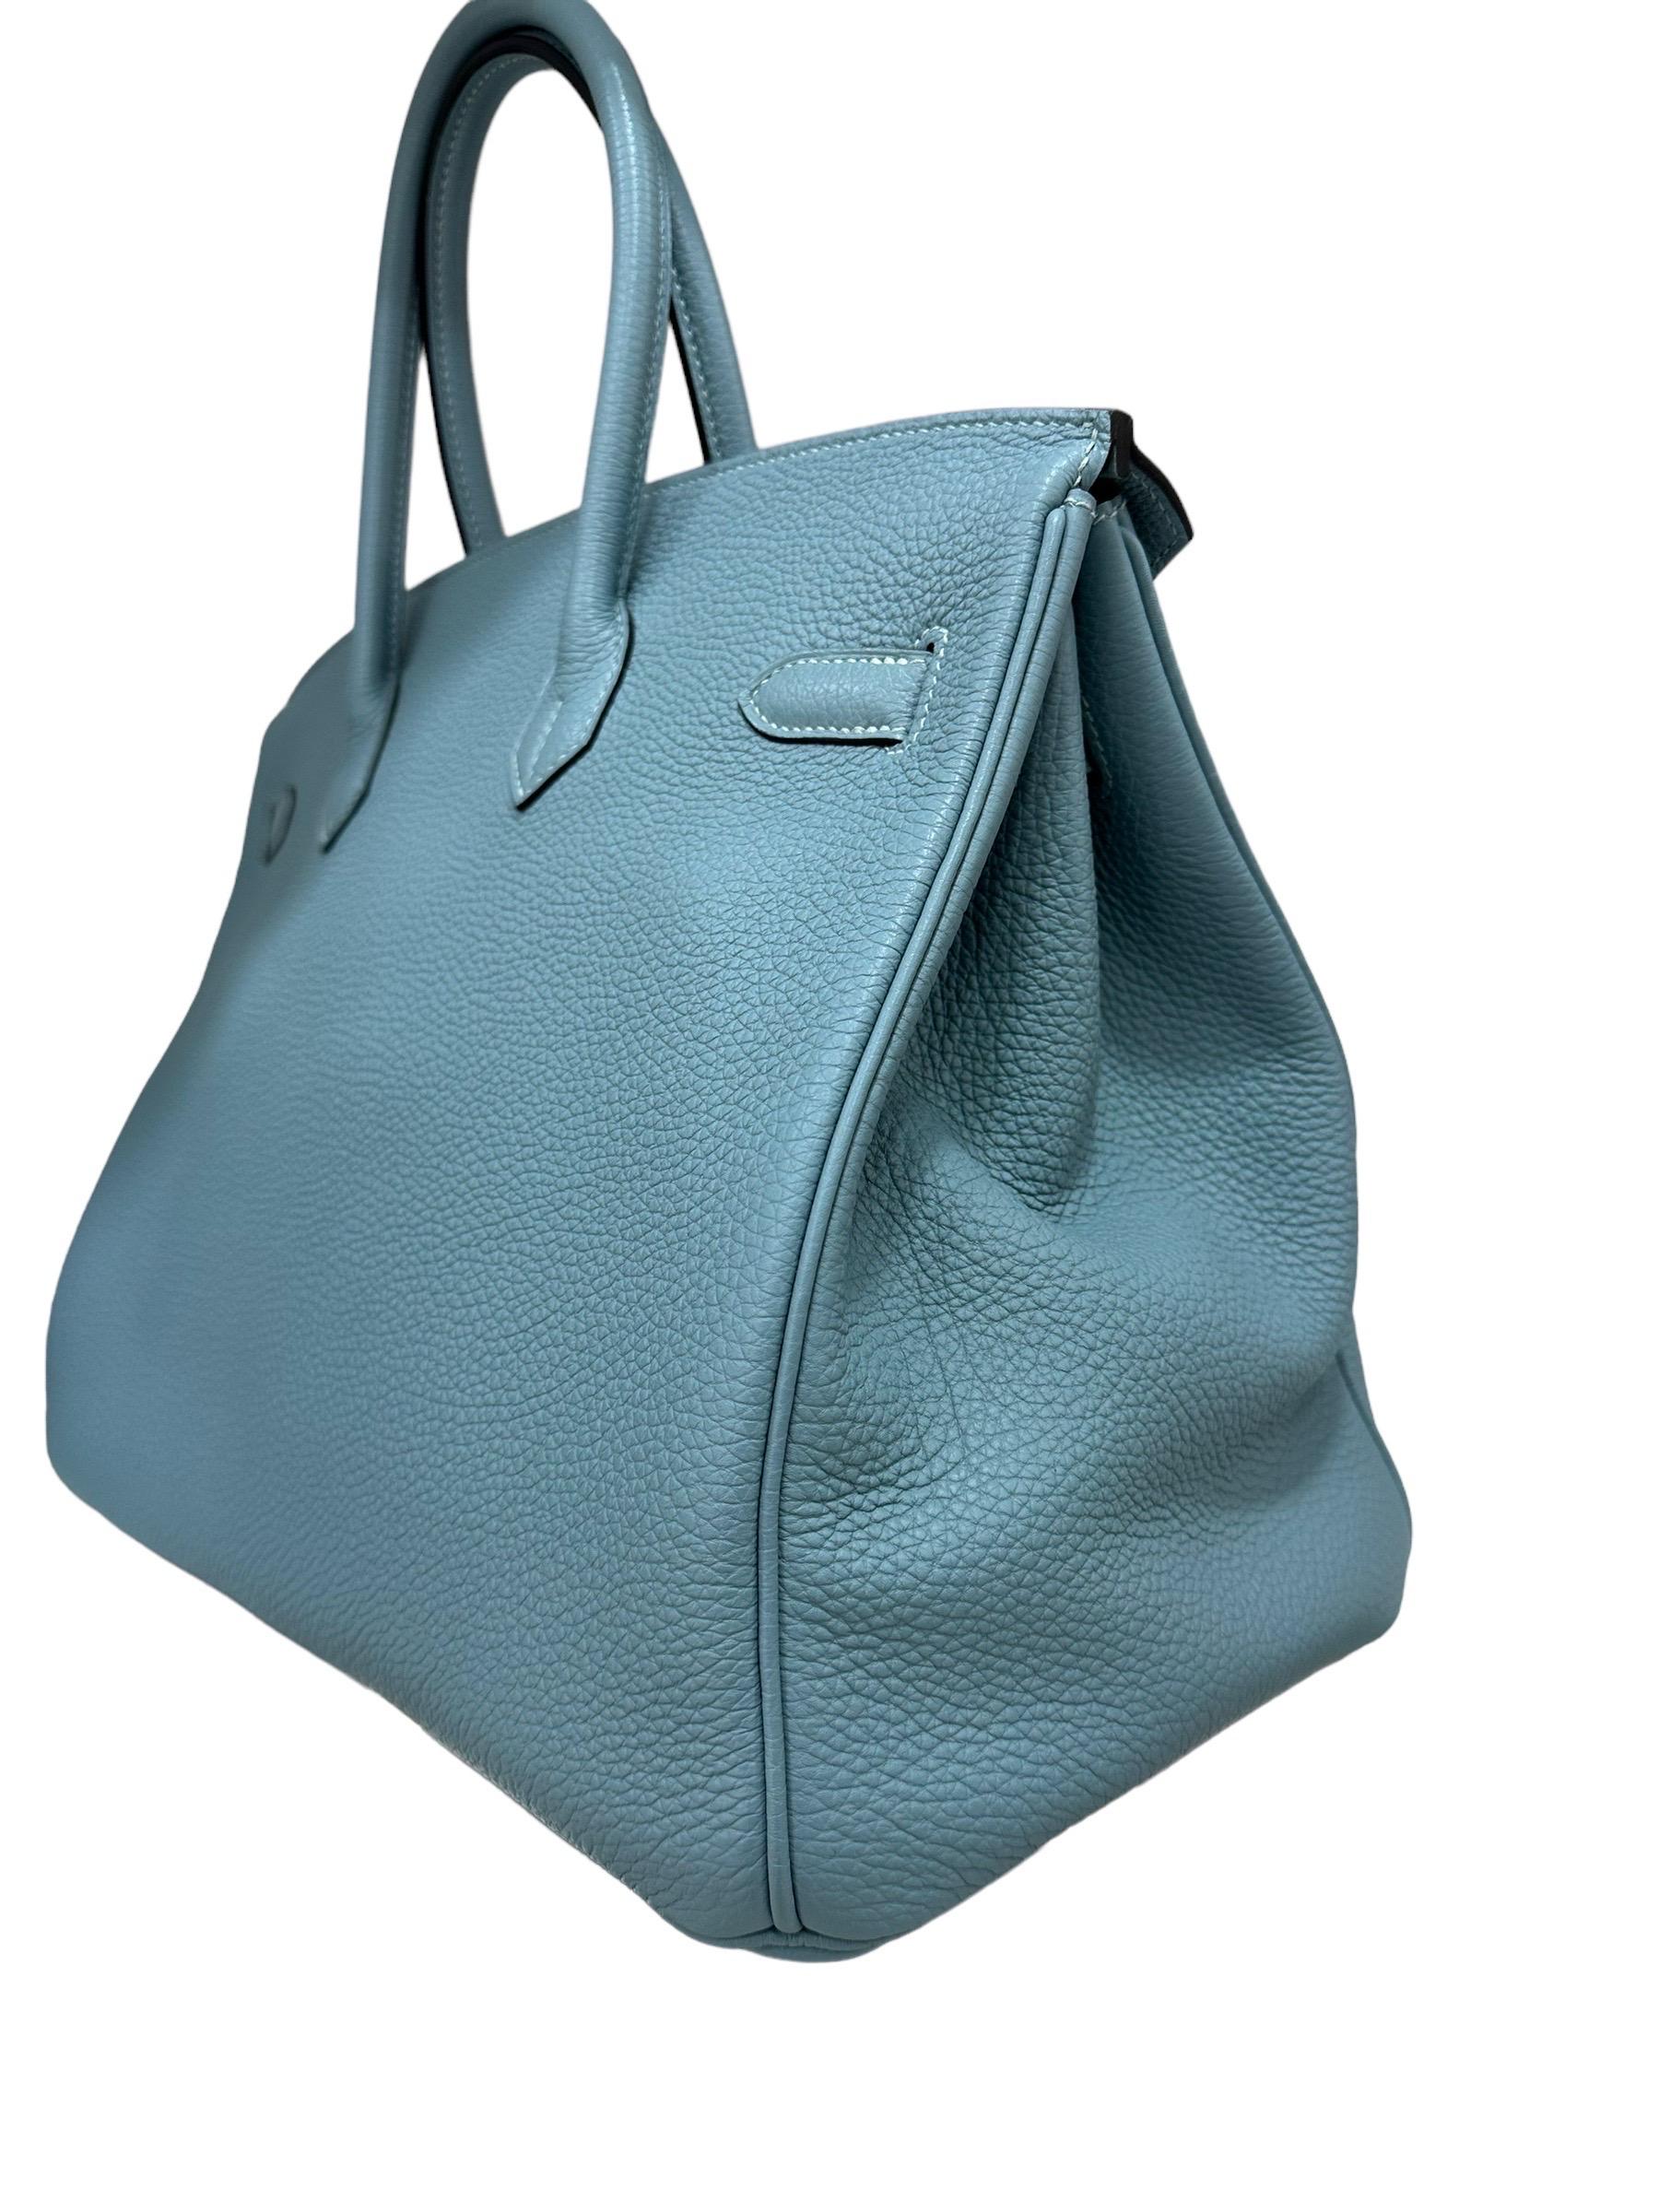 2009 Hermès Birkin 35 Togo Leather Ciel Top Handle Bag For Sale 7